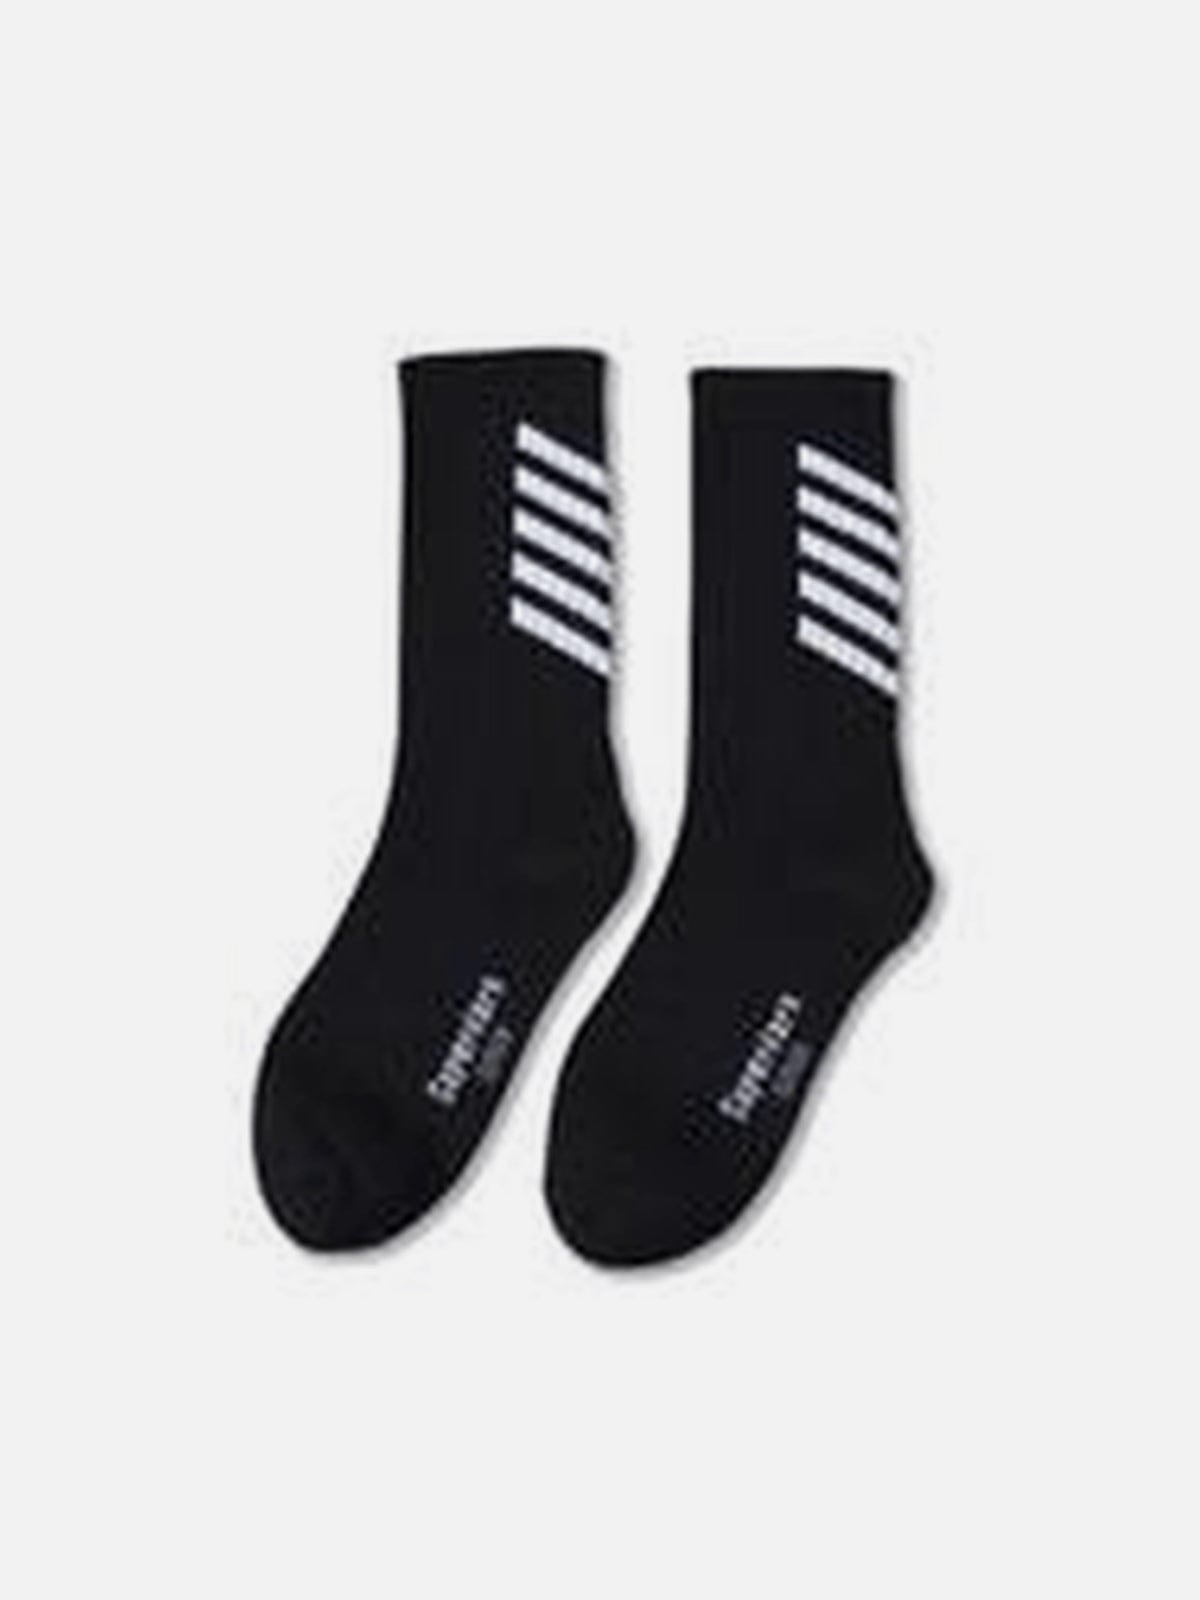 Striped Skateboard Socks 1PC Streetwear Brand Techwear Combat Tactical YUGEN THEORY